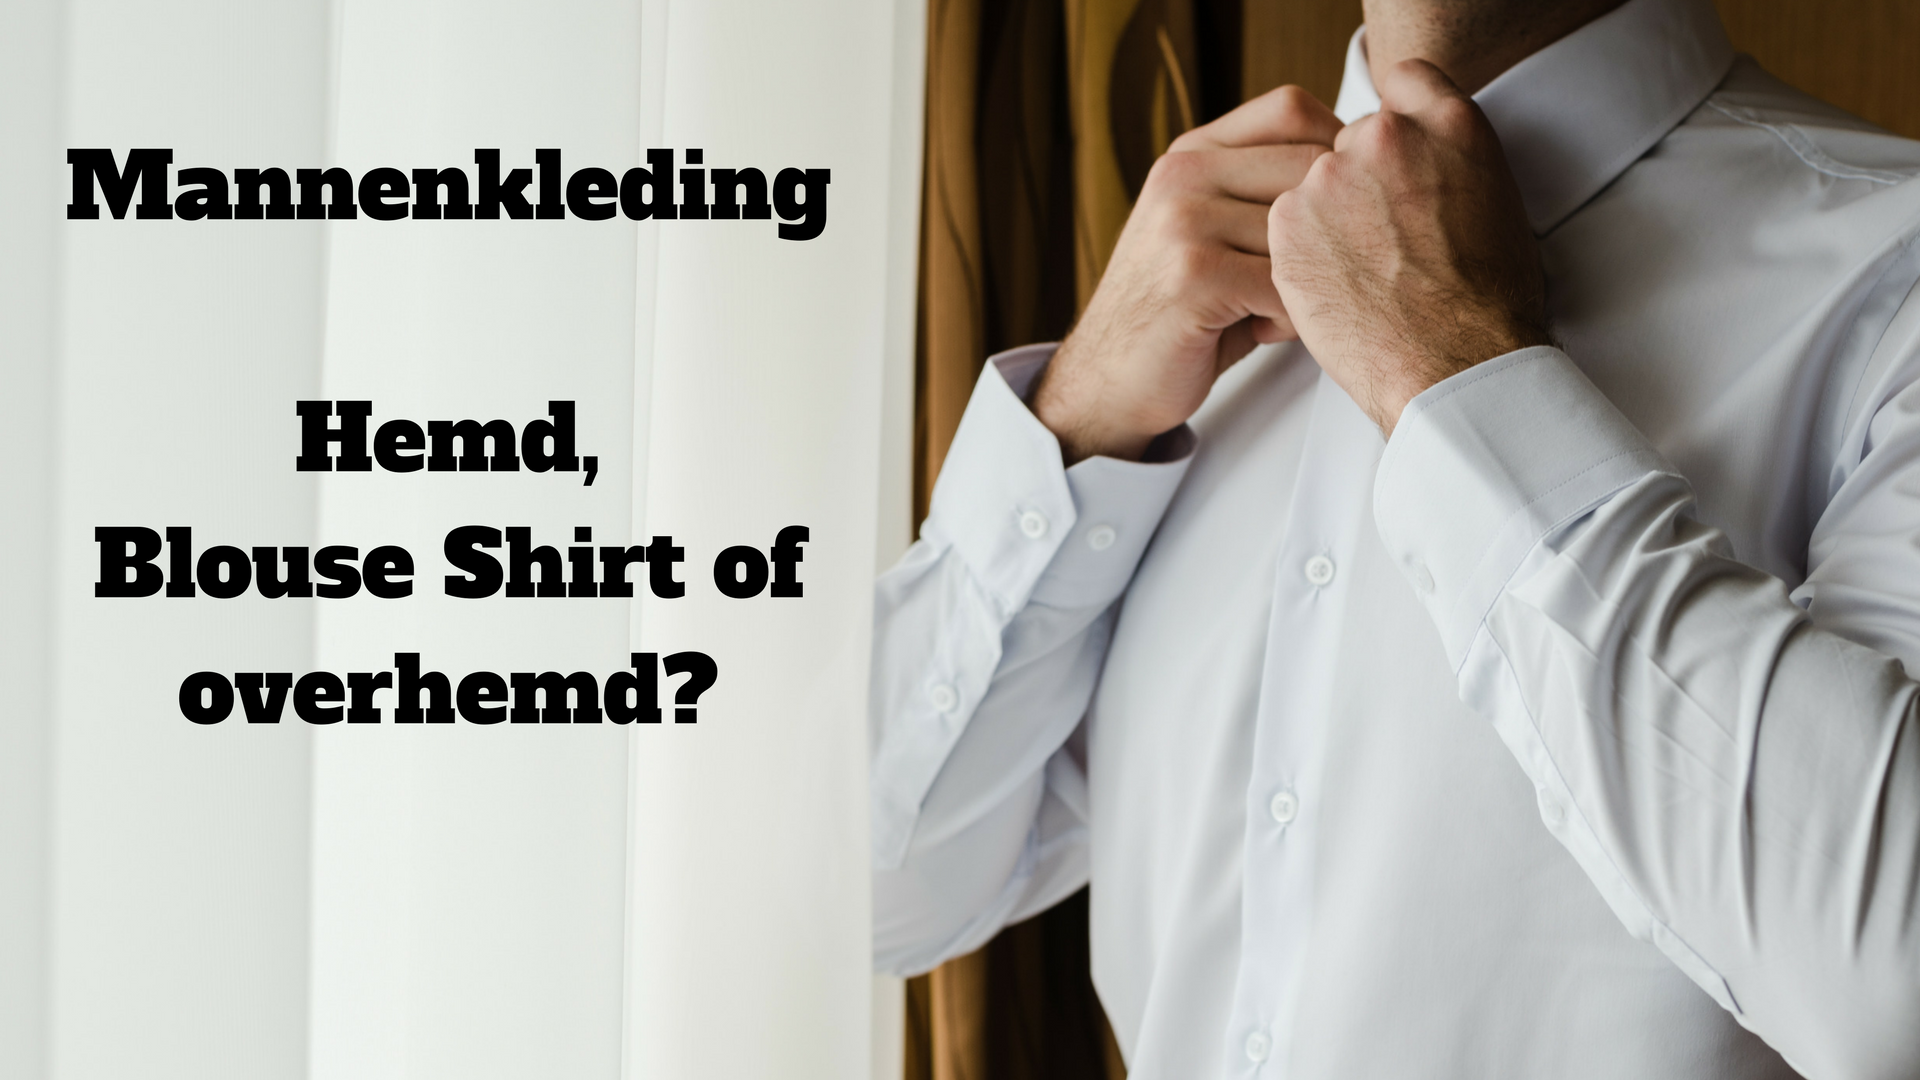 Mannenkleding; Hemd, shirt, overhemd of blouse?